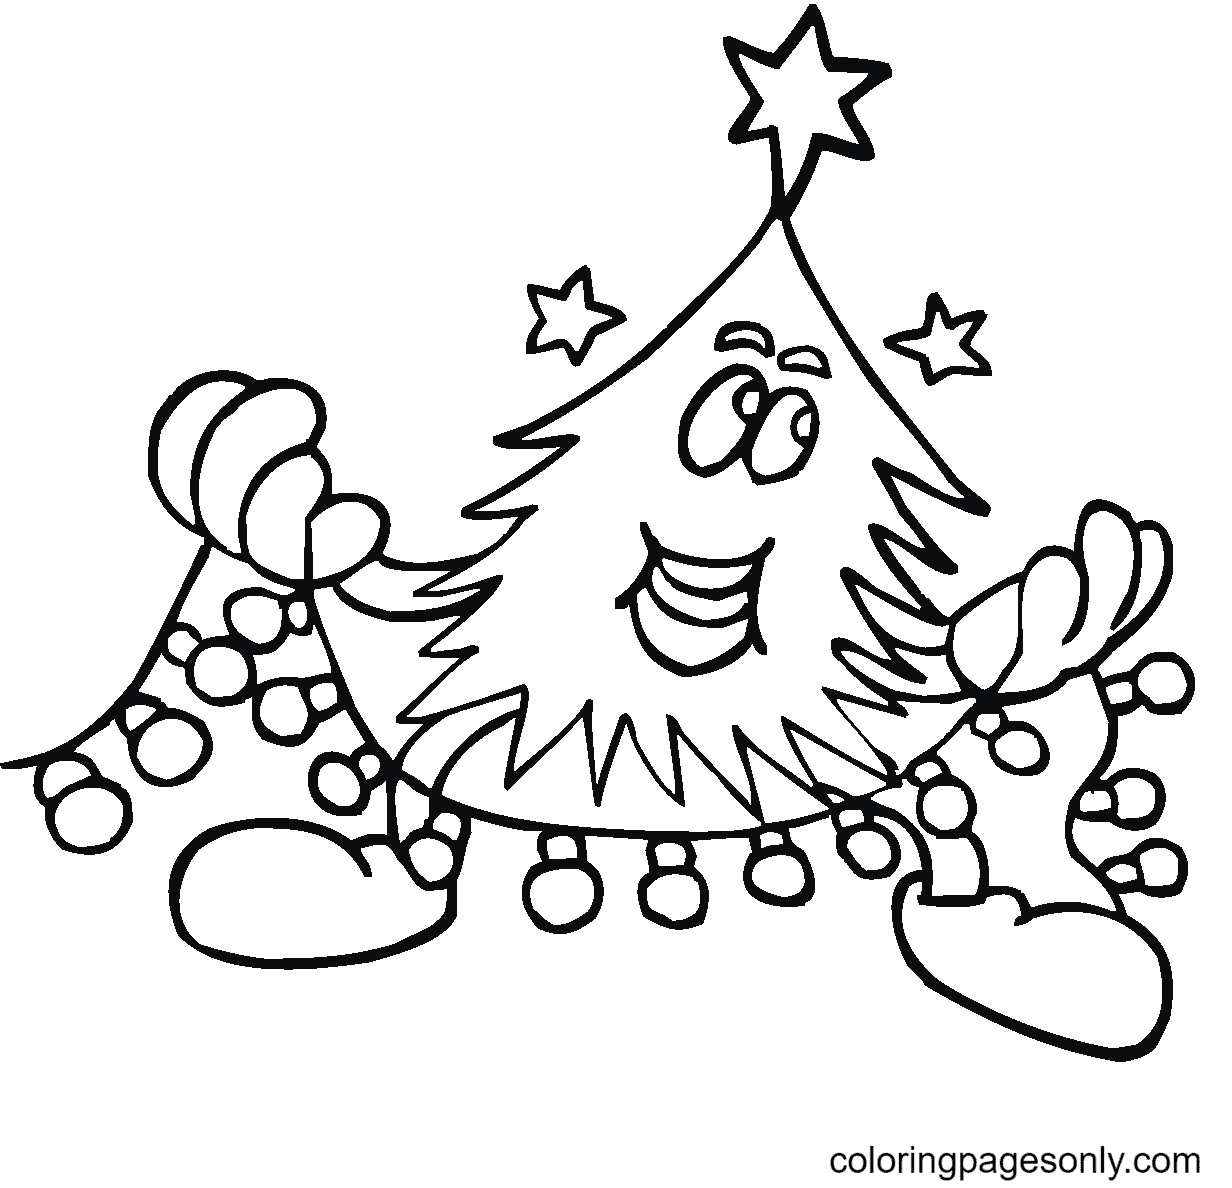 Christmas Tree And Christmas Lights Image For Kids